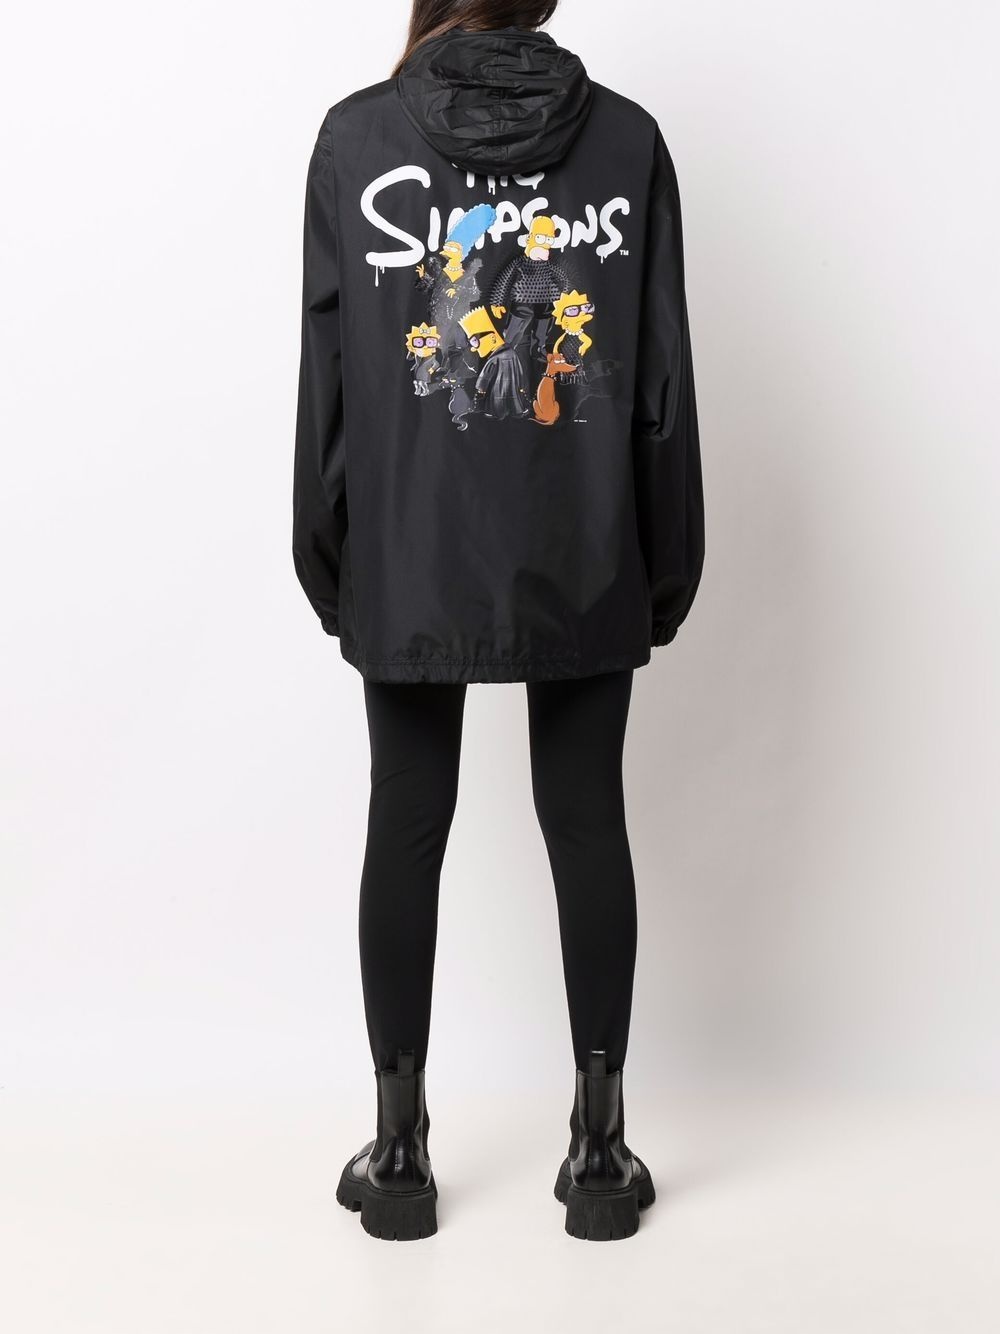 Simpsons zip up jacket - 6